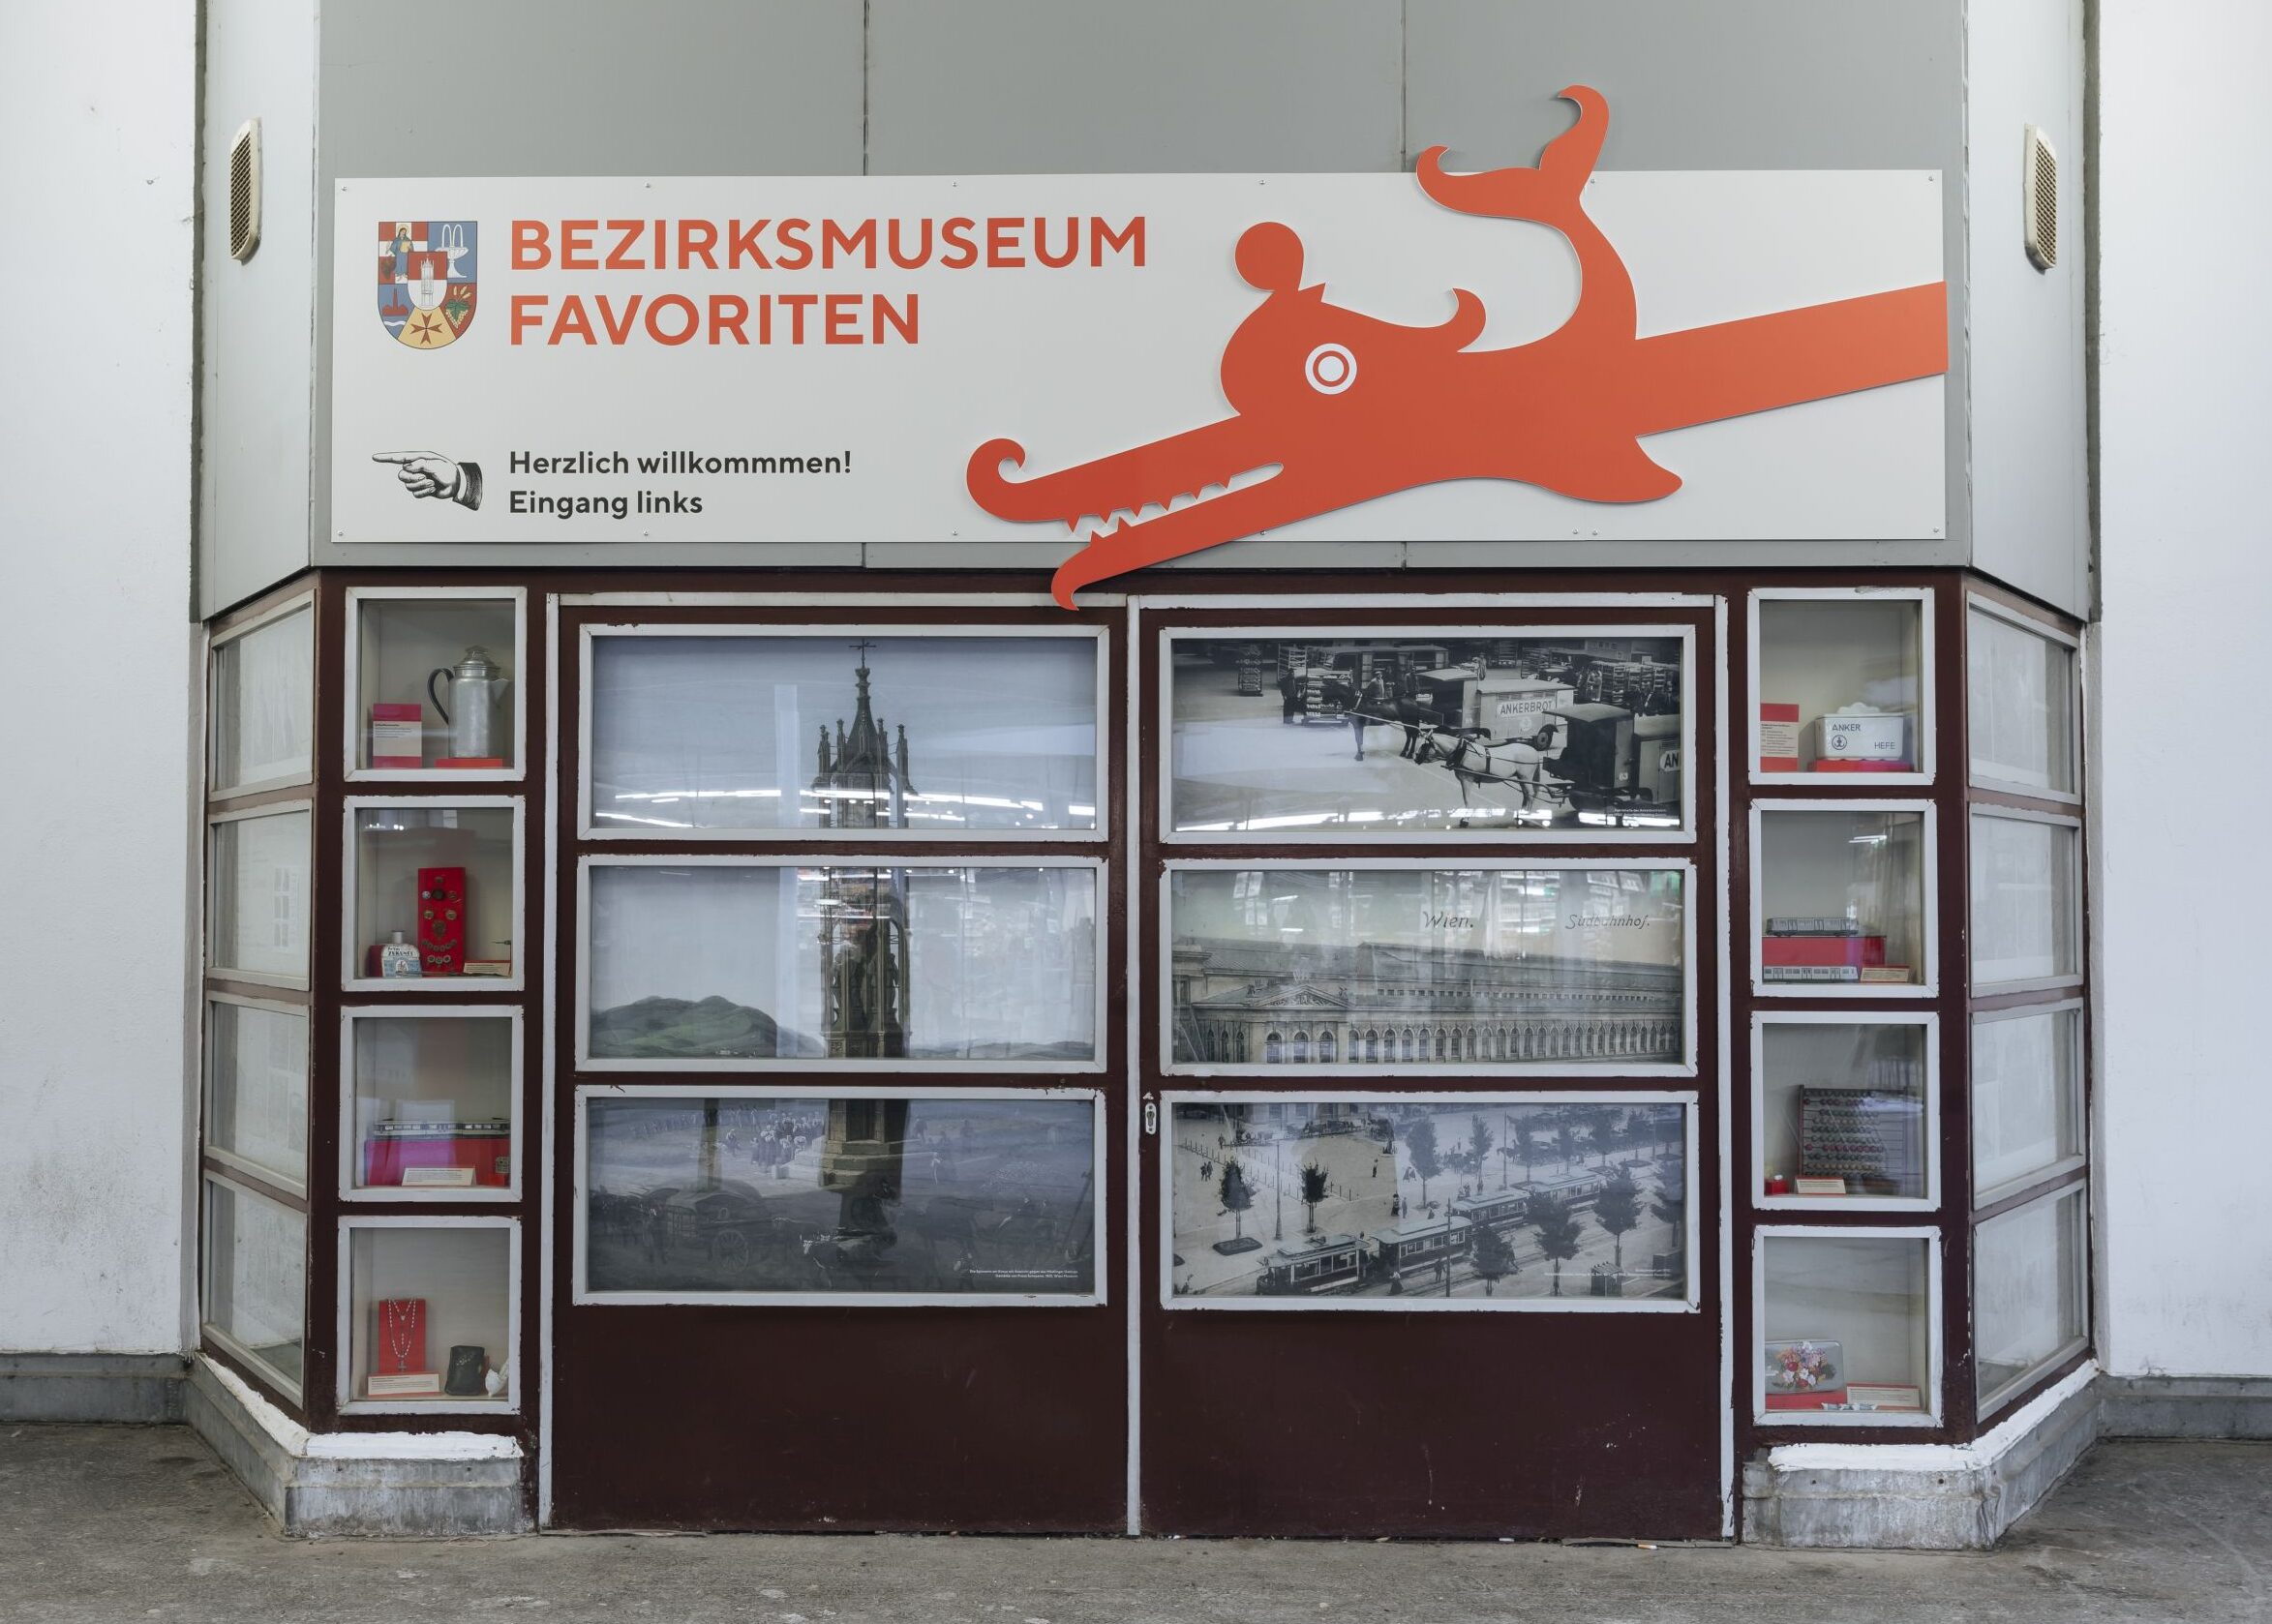 Einblicke in das Bezirksmuseum. Schaufensterausstellung, Bezirksmuseum Favoriten, Foto: Marlene Fröhlich | luxundlumen.com